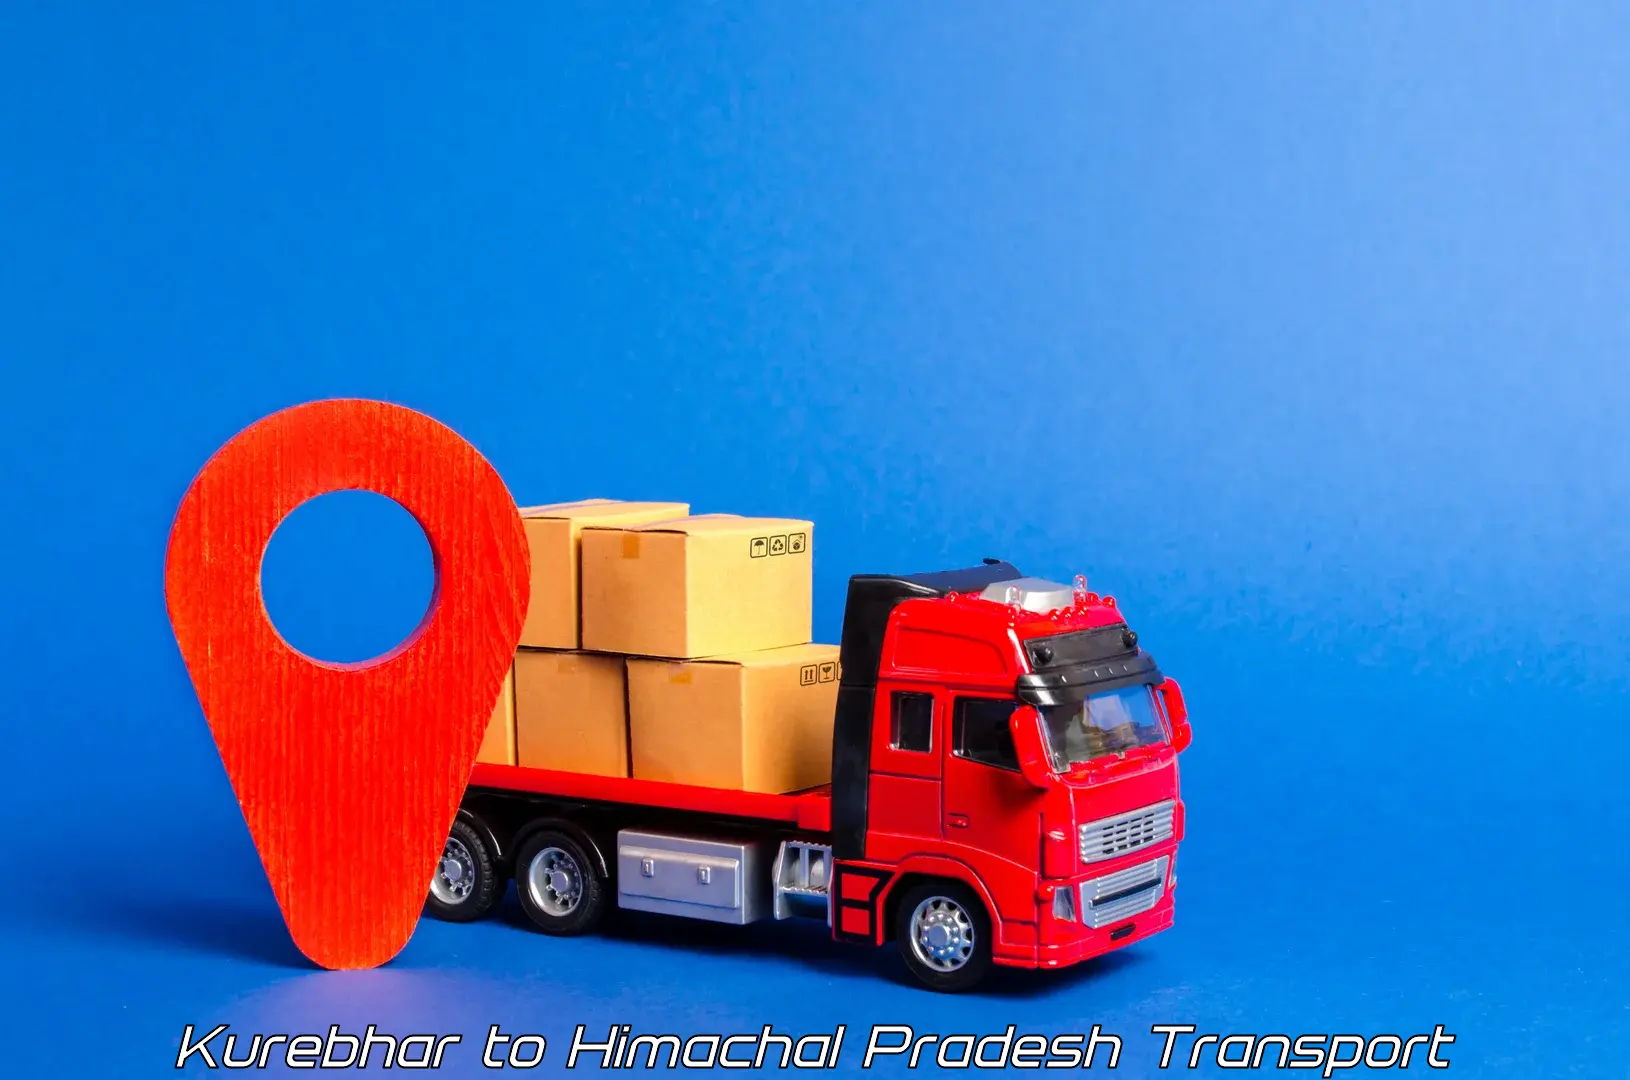 Commercial transport service Kurebhar to Shahpur Kangra